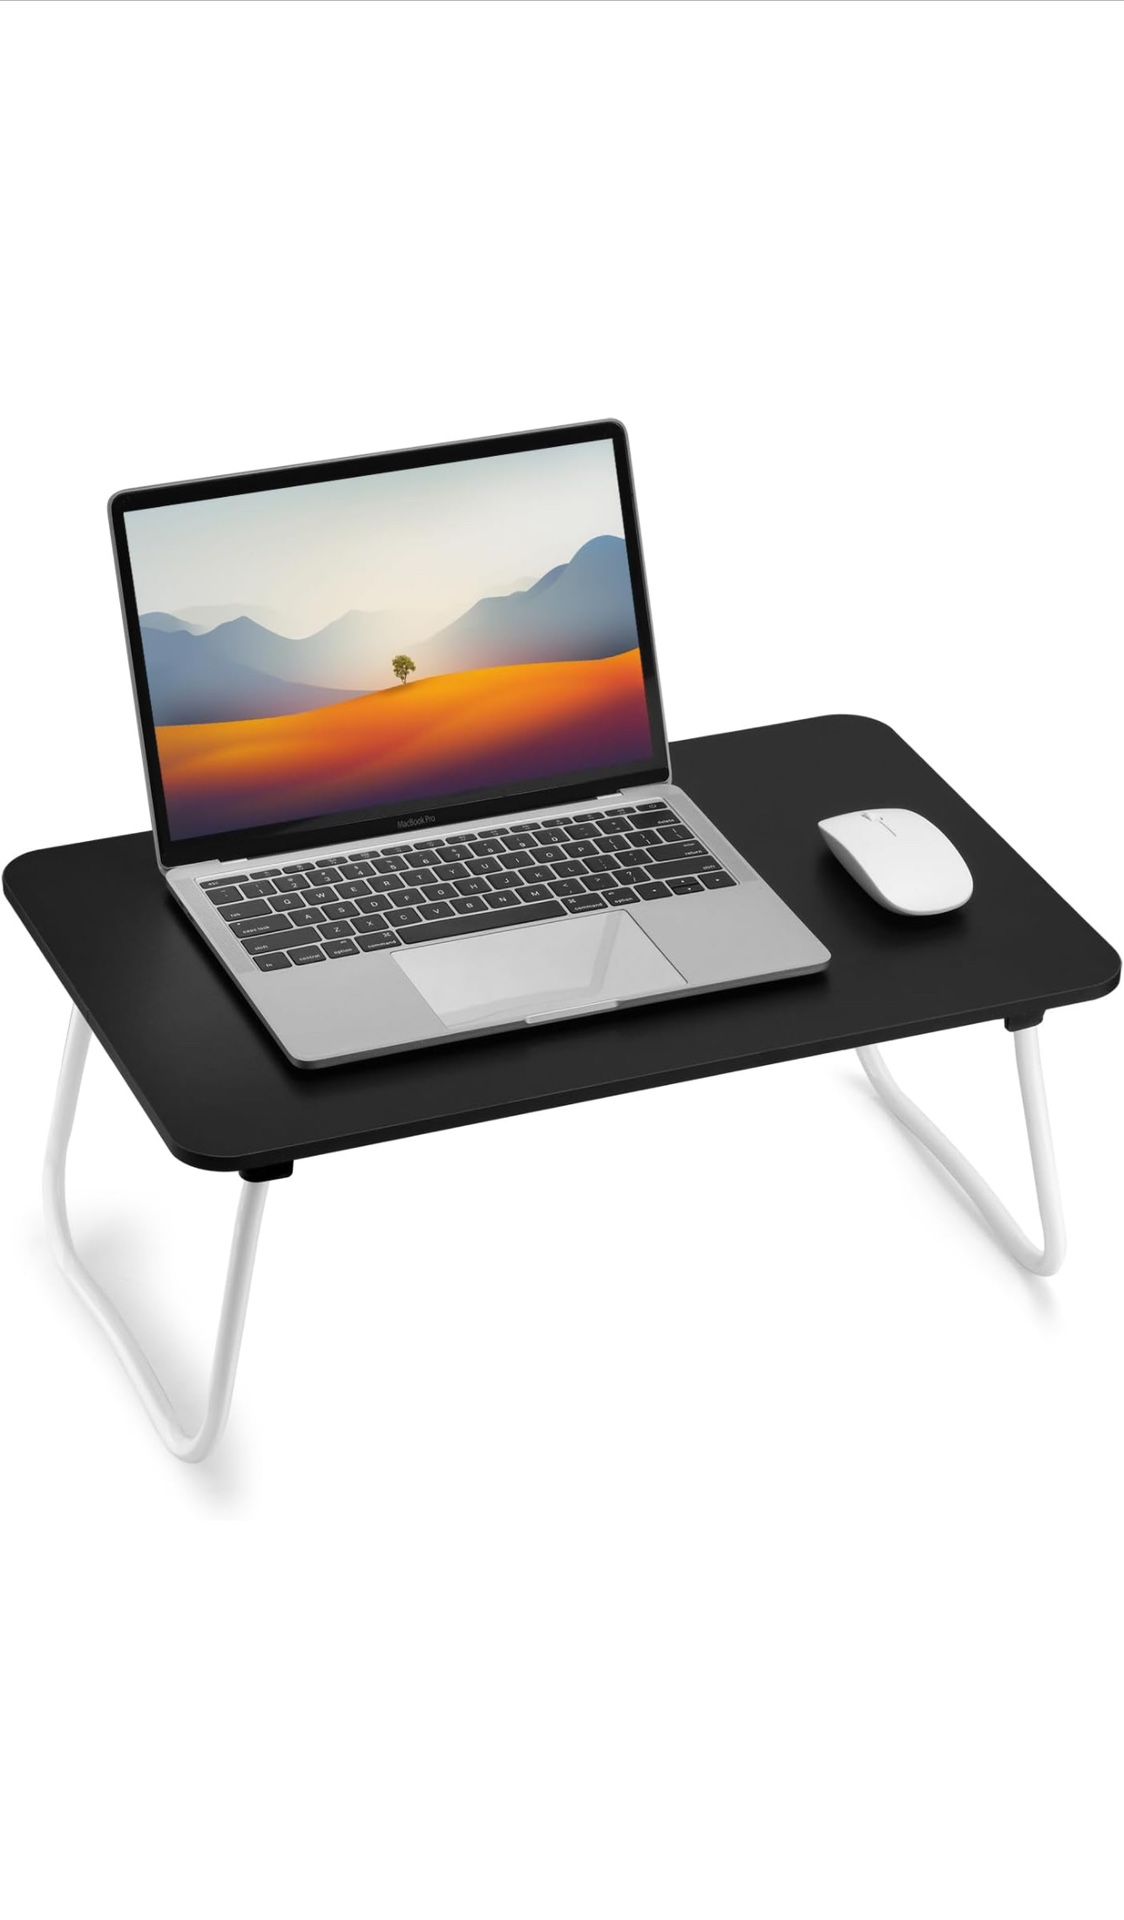 Foldable Laptop Desk, Portable Lap Bed Table 20.7”W x 12.6”D x 9”H